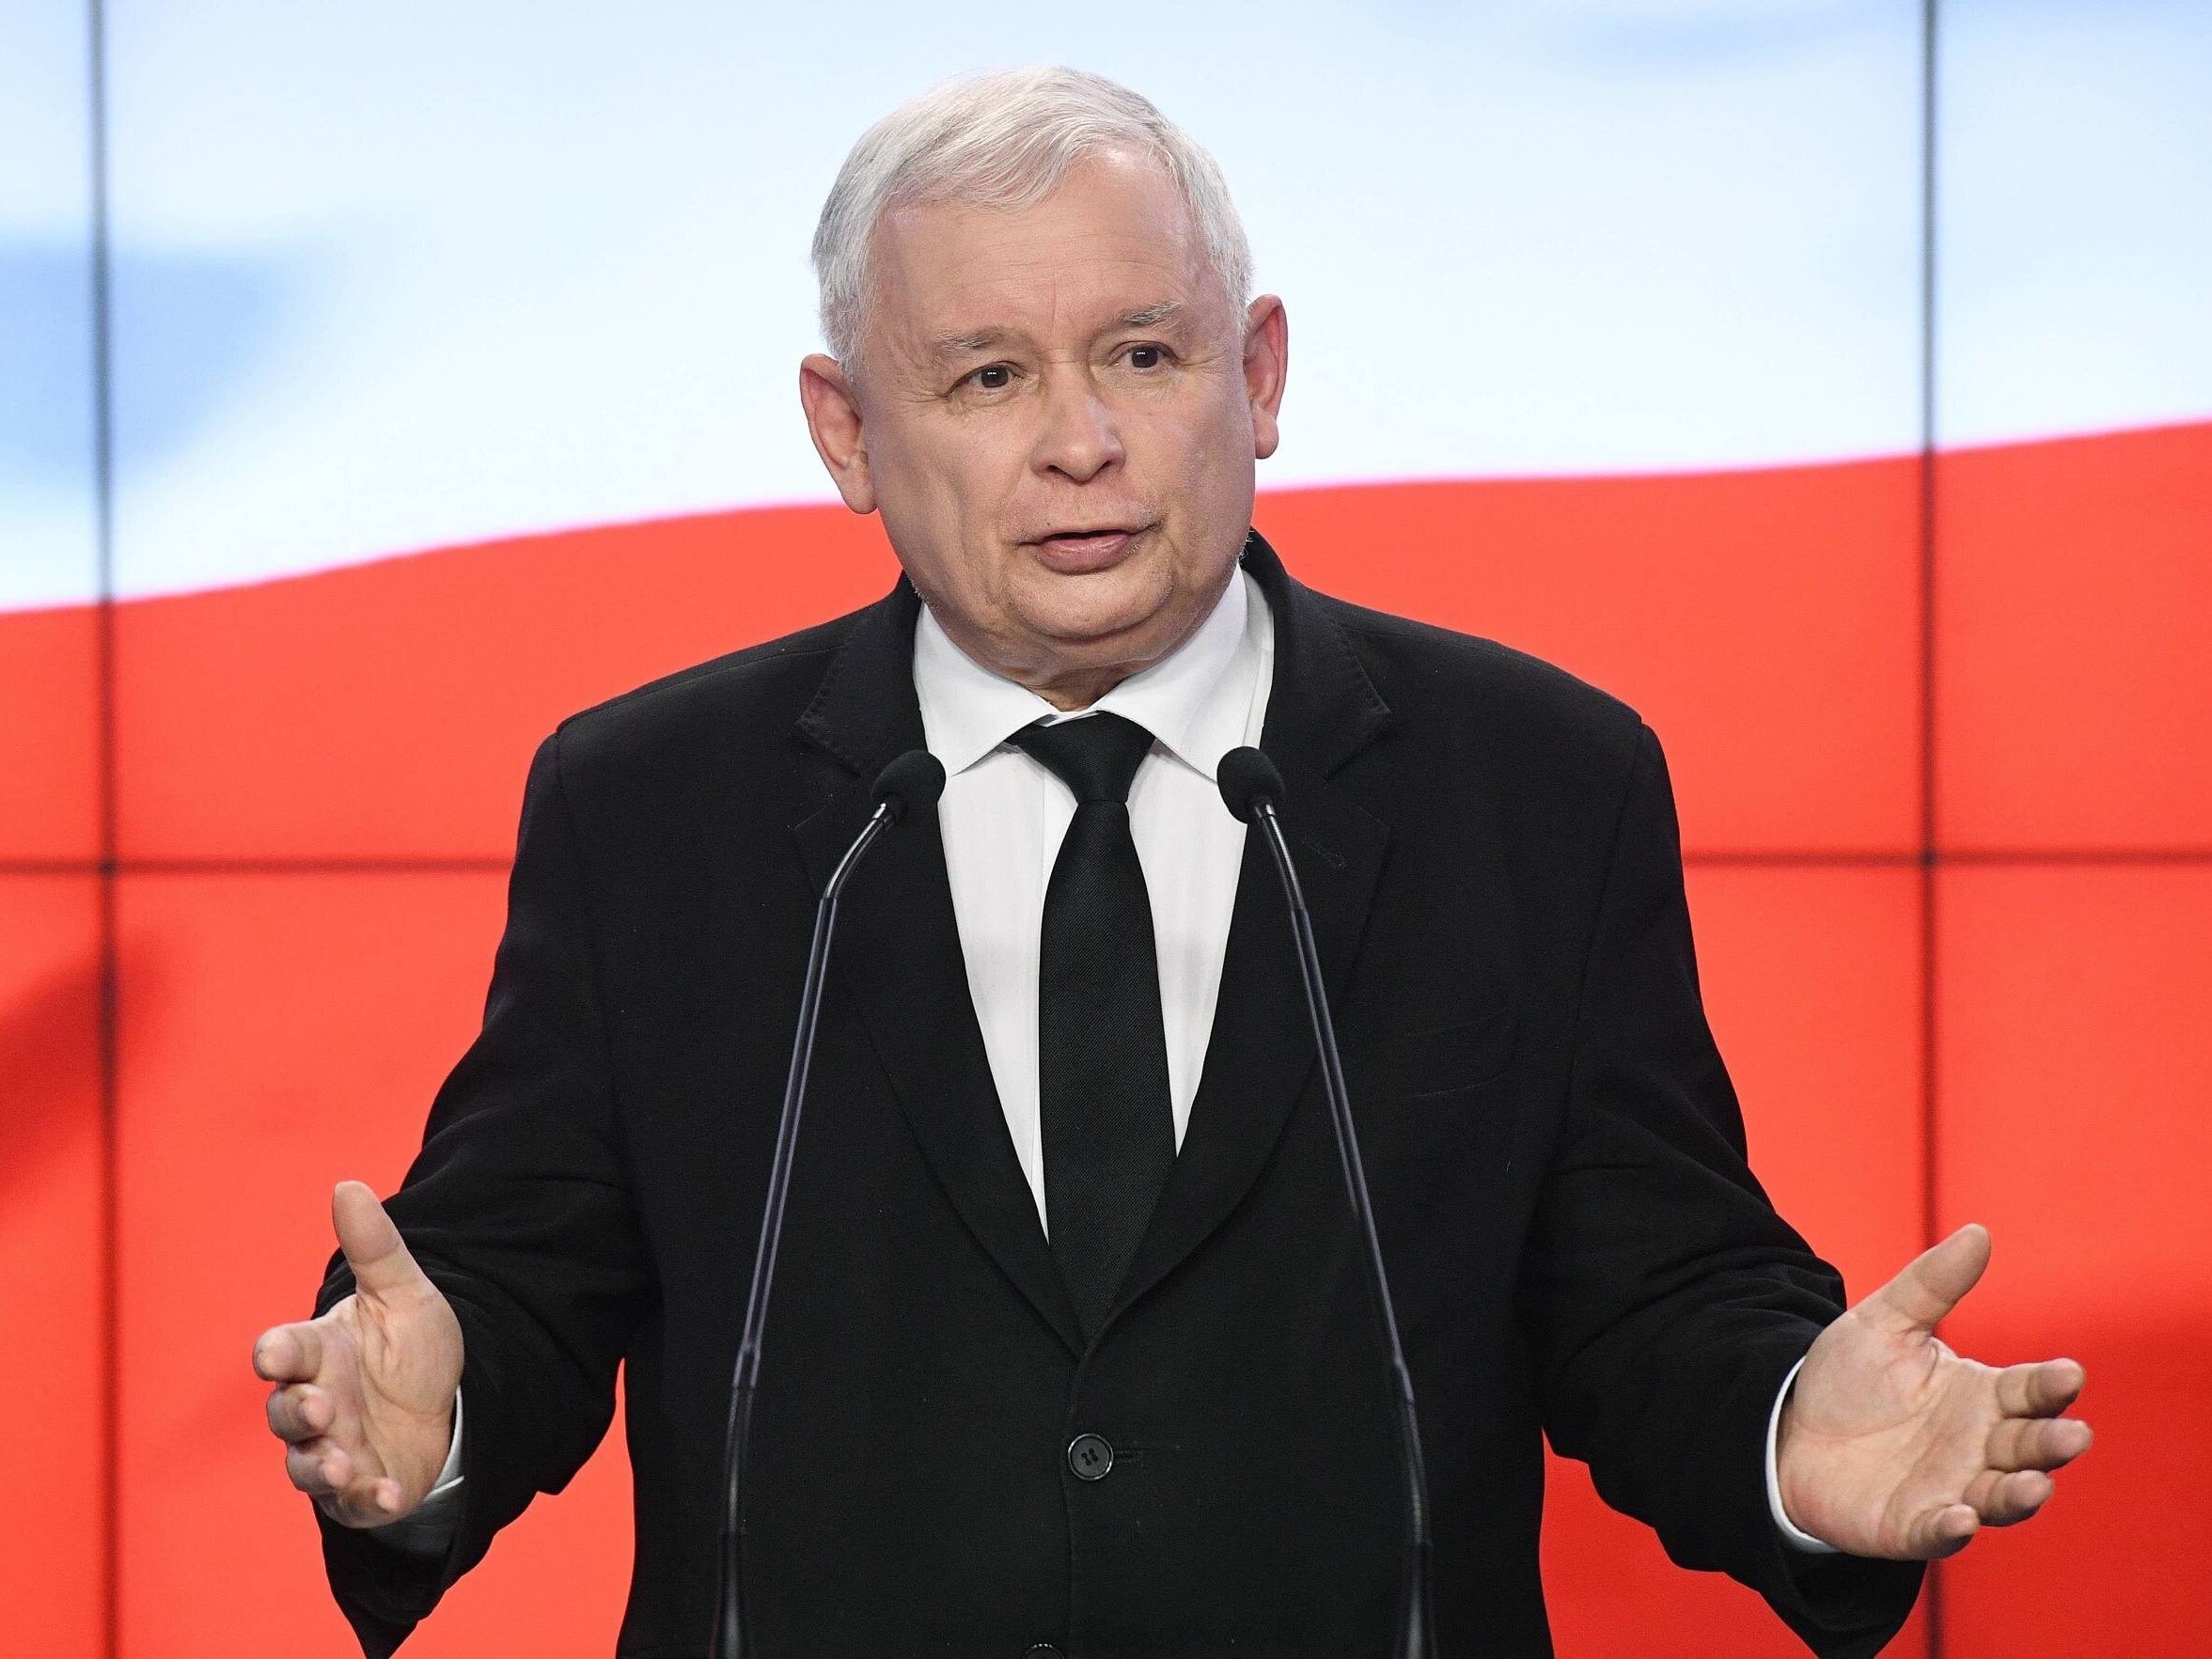 kaczyński skomentował plany tuska i scholza. jednym zdaniem